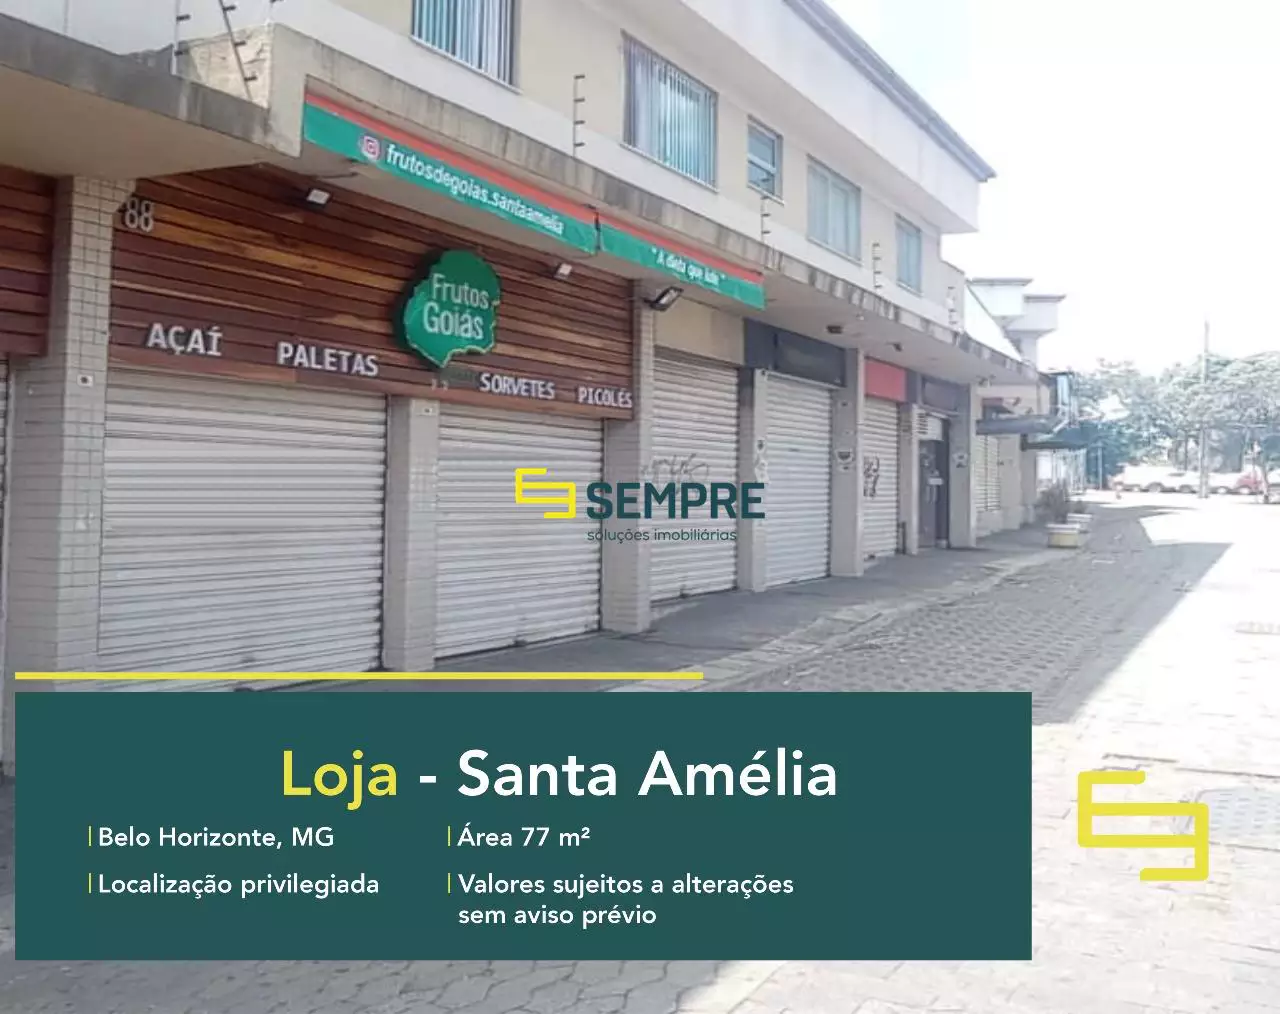 Loja na região Pampulha à venda - Santa Amélia, em excelente localização. O estabelecimento comercial conta com área de 77 m².